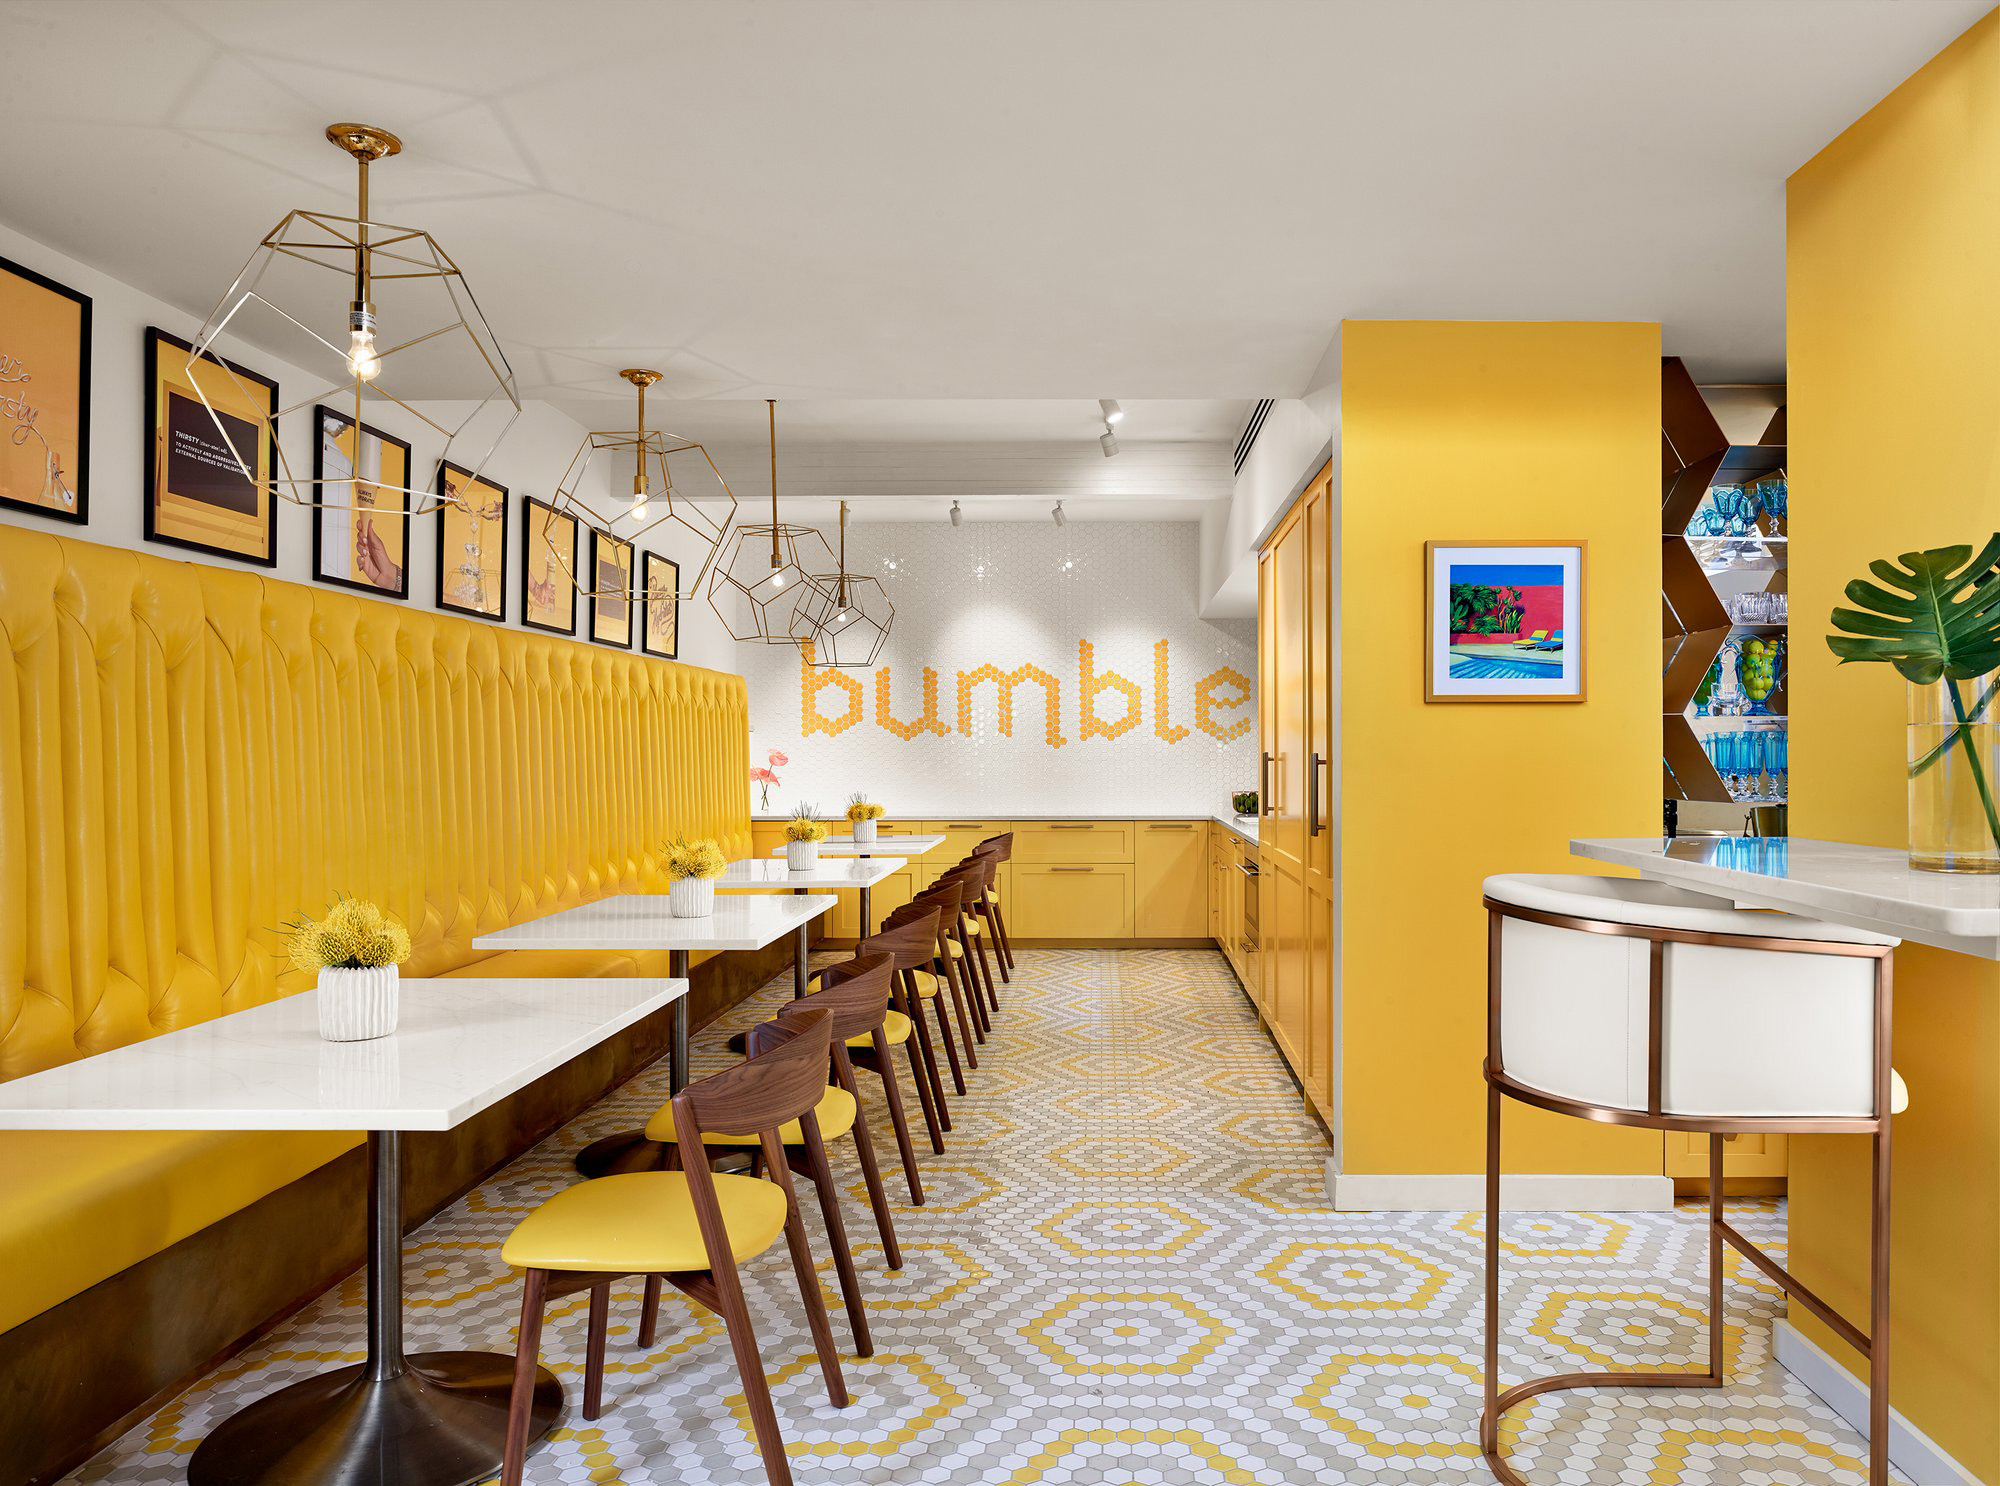 图片[6]|Bumble办公室——奥斯汀|ART-Arrakis | 建筑室内设计的创新与灵感